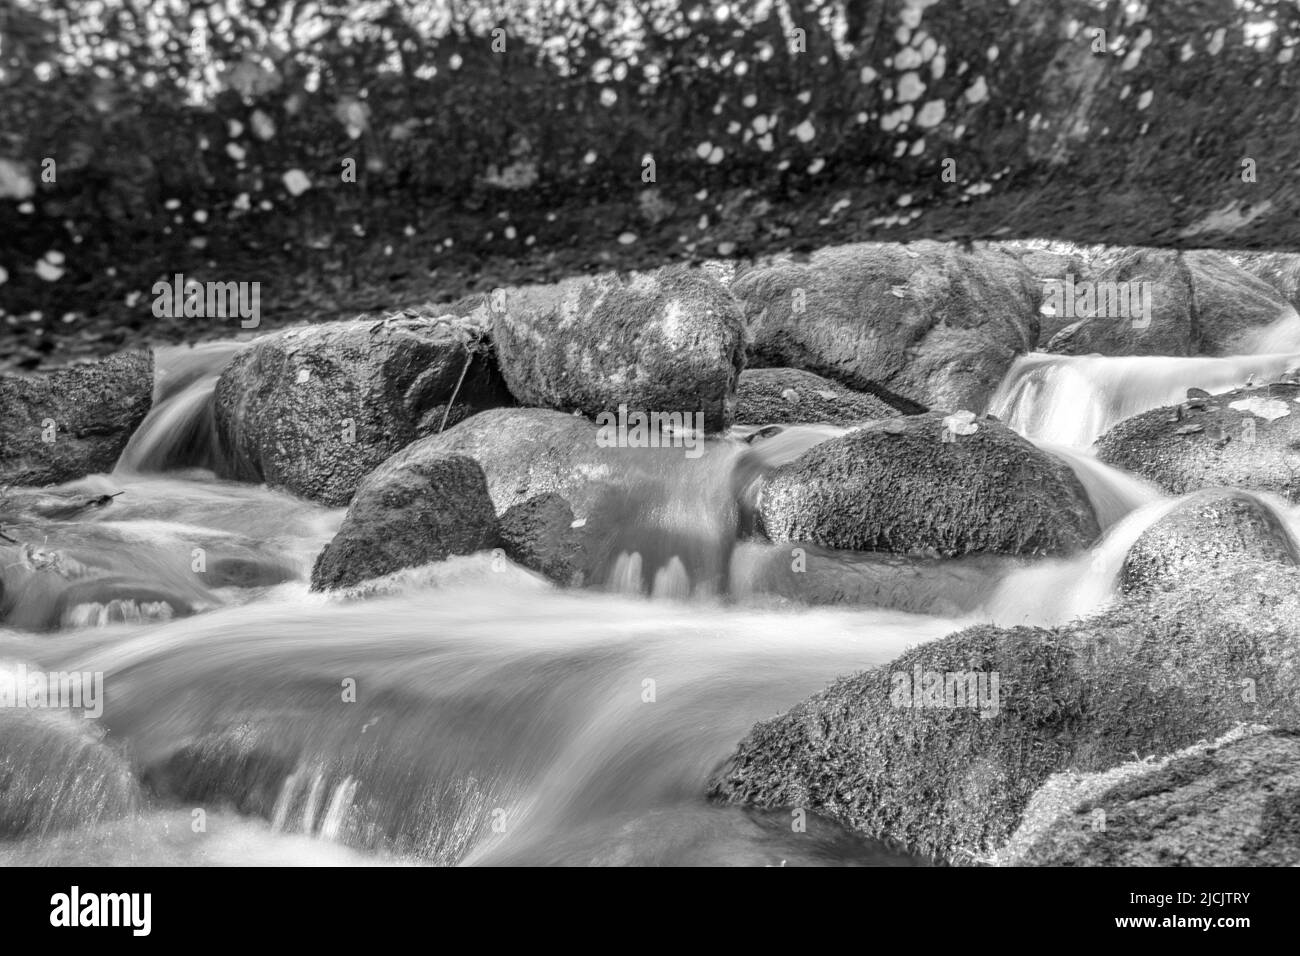 paysage noir et blanc avec une petite rivière sauvage et rapide entre les rochers, exposition à long terme, eau inondée, rochers, arbres et feuilles d'automne Banque D'Images